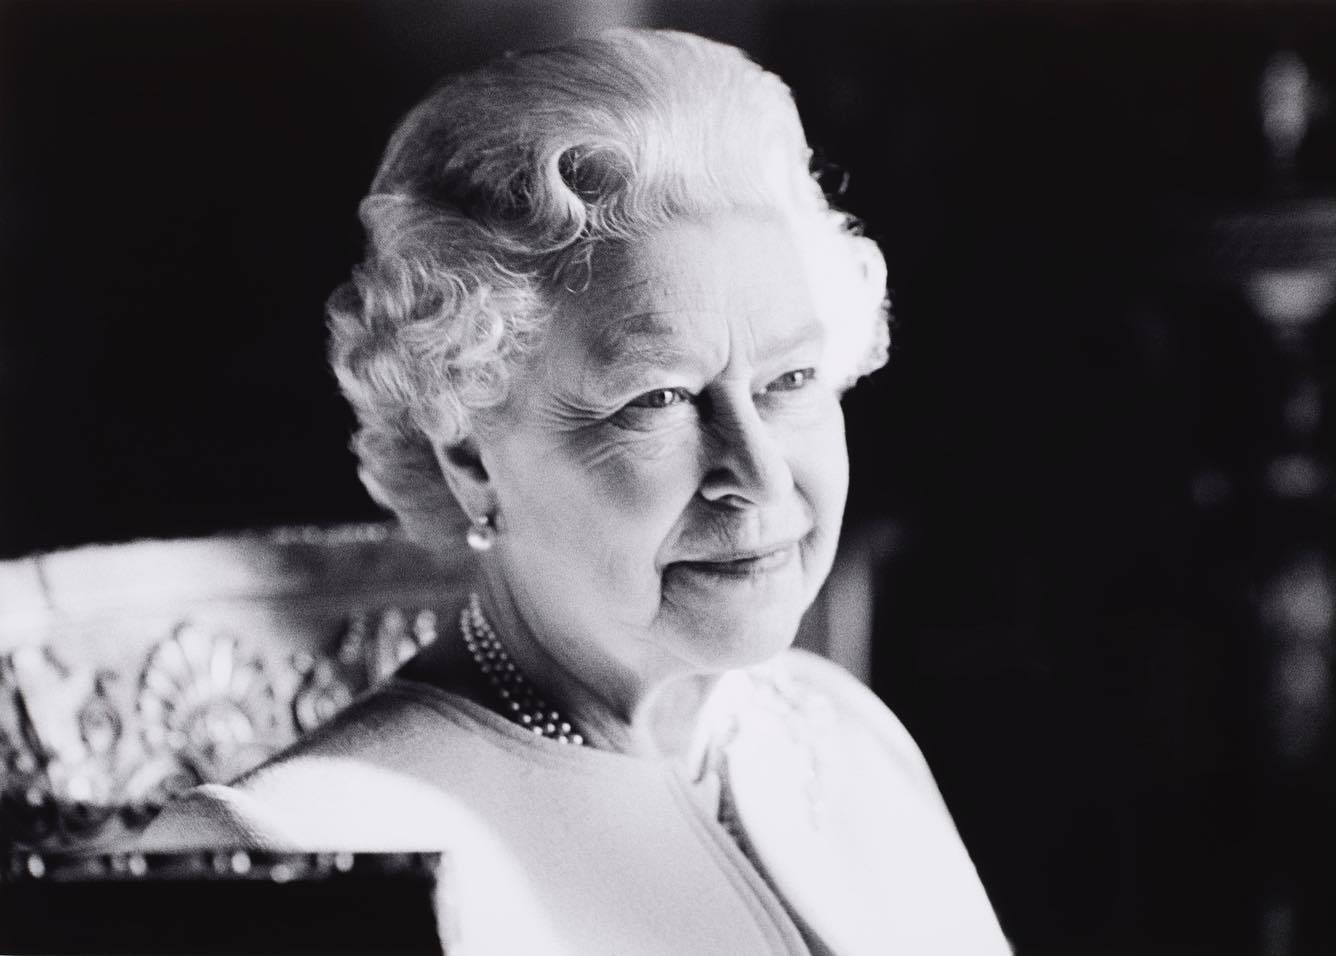 Βασίλισσα Ελισάβετ: Η επόμενη μέρα μετά τον θάνατό της στη Βρετανία – Αλλάζει το νόμισμα και ο εθνικός ύμνος